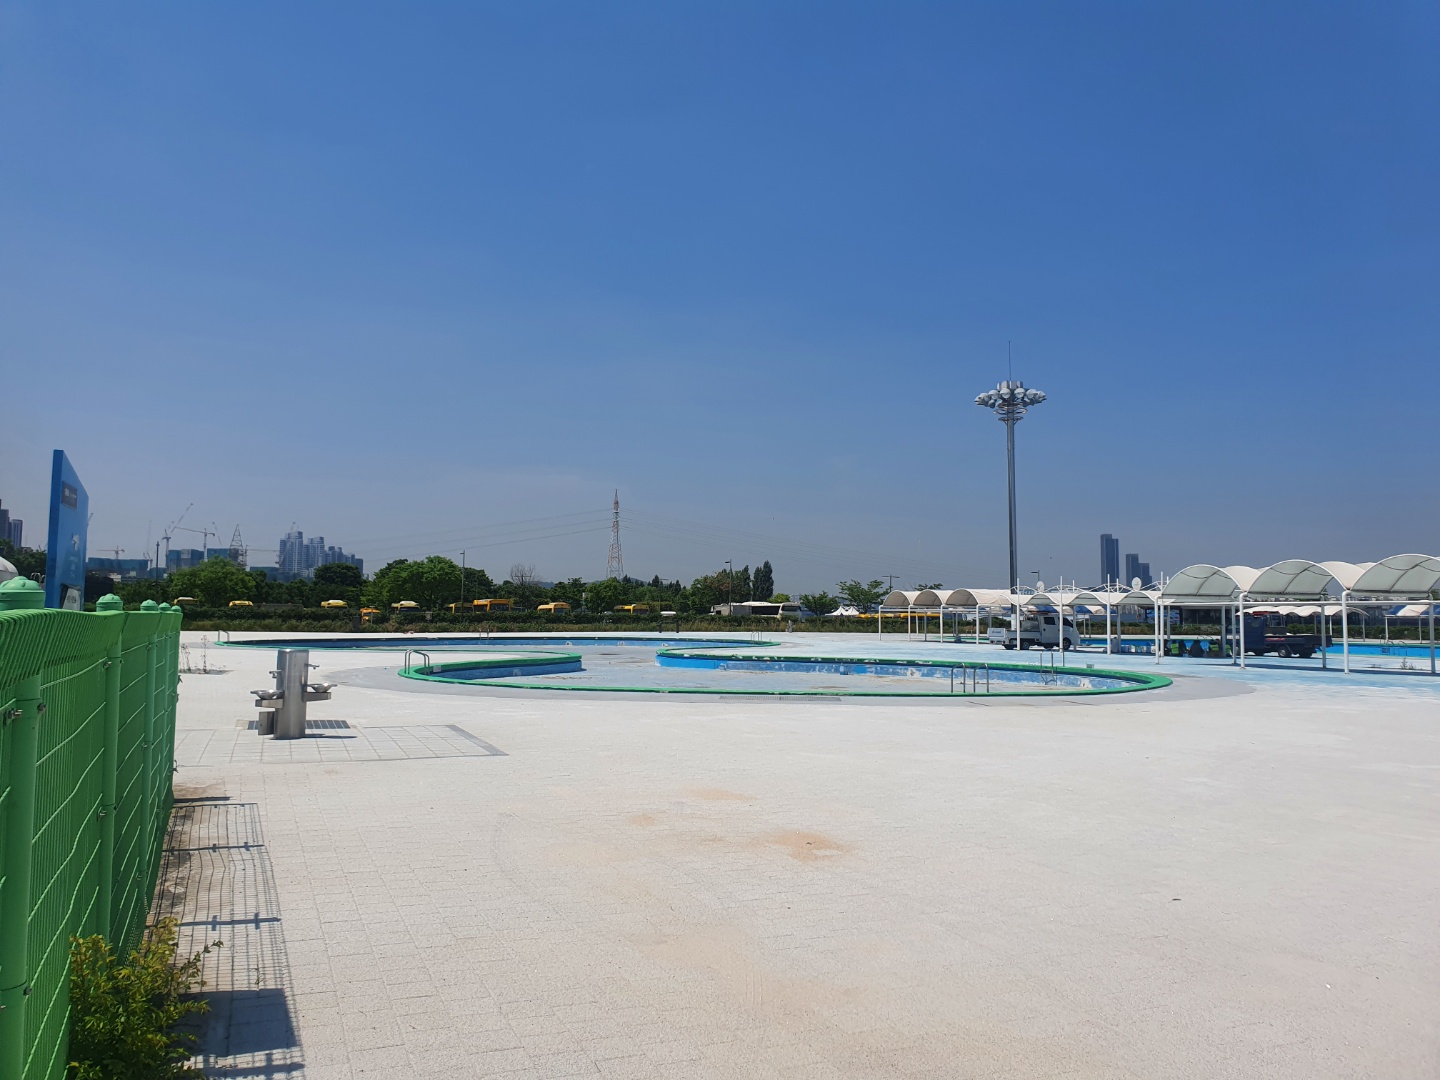 24일 개장 준비가 한창인 서울 한강공원 잠원 수영장